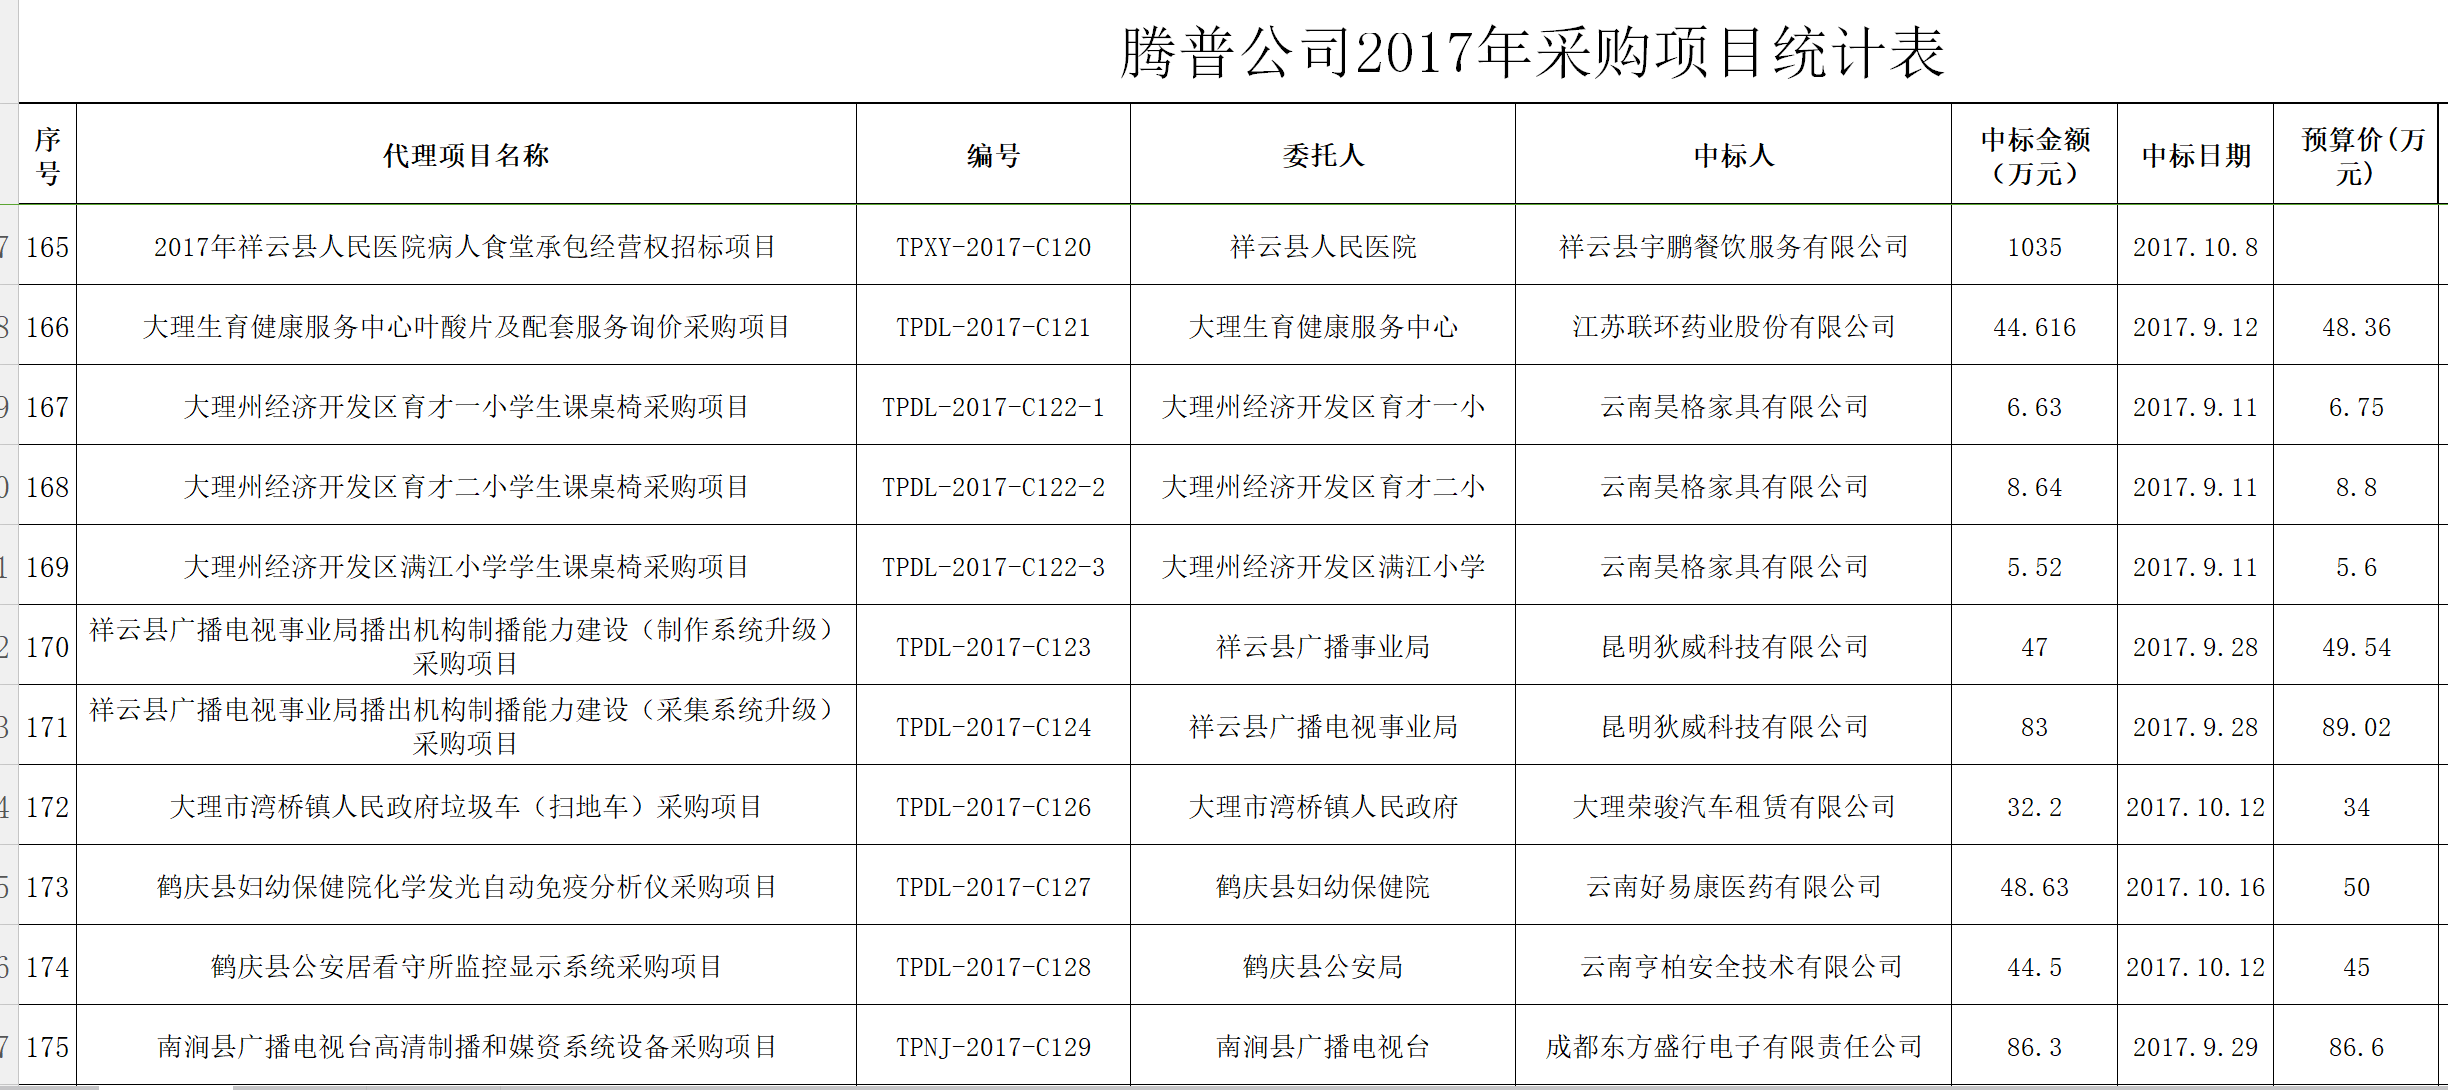 腾普公司2017年采购统计表18.png